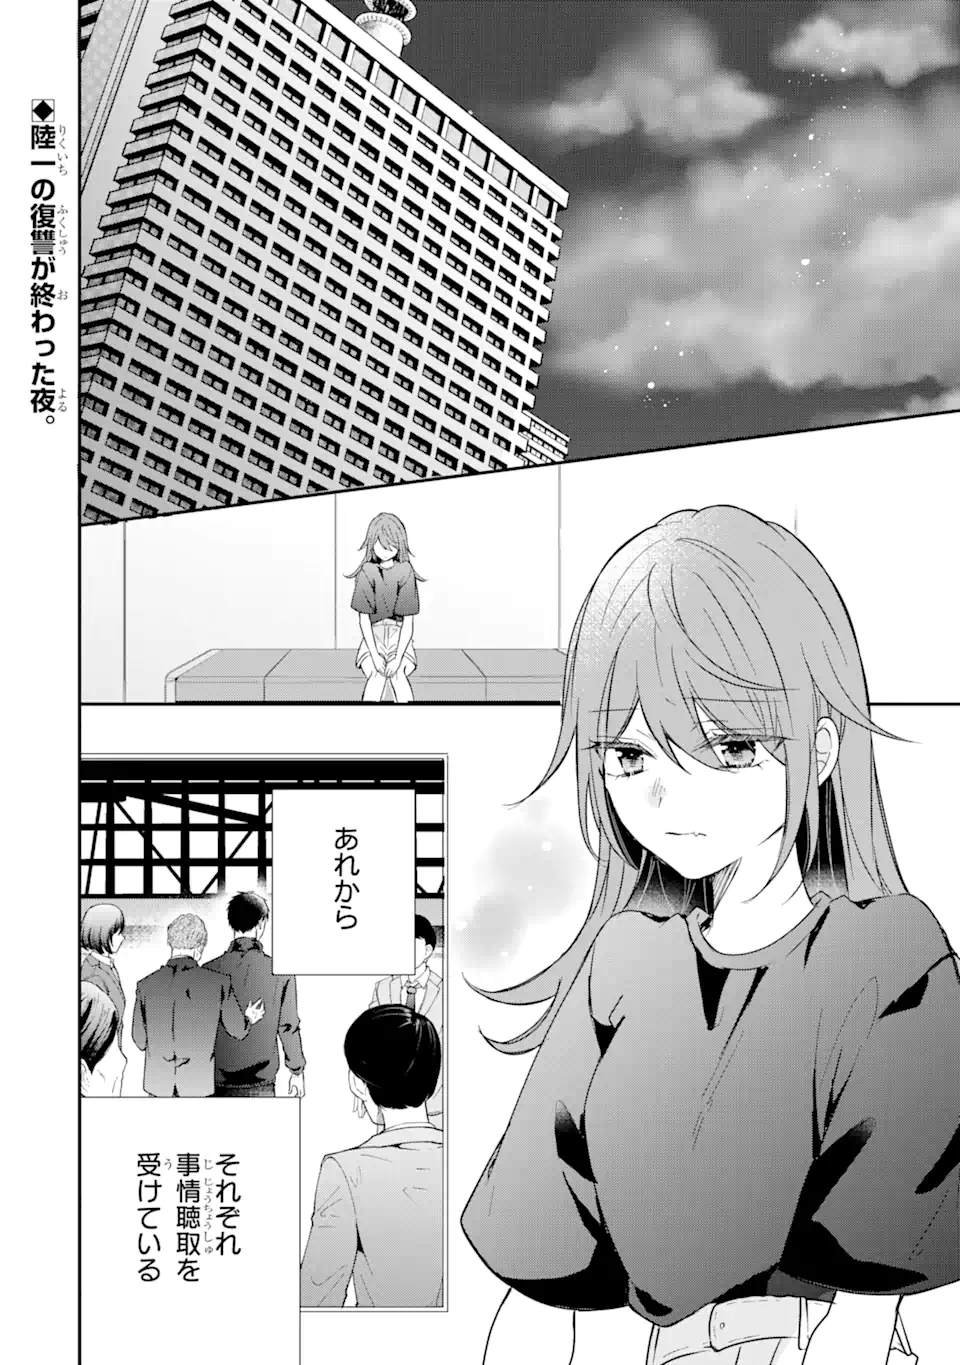 Keisatsu 3 Kyoudai wa Furyou Shoujo ni Amasugiru - Chapter 18.1 - Page 2